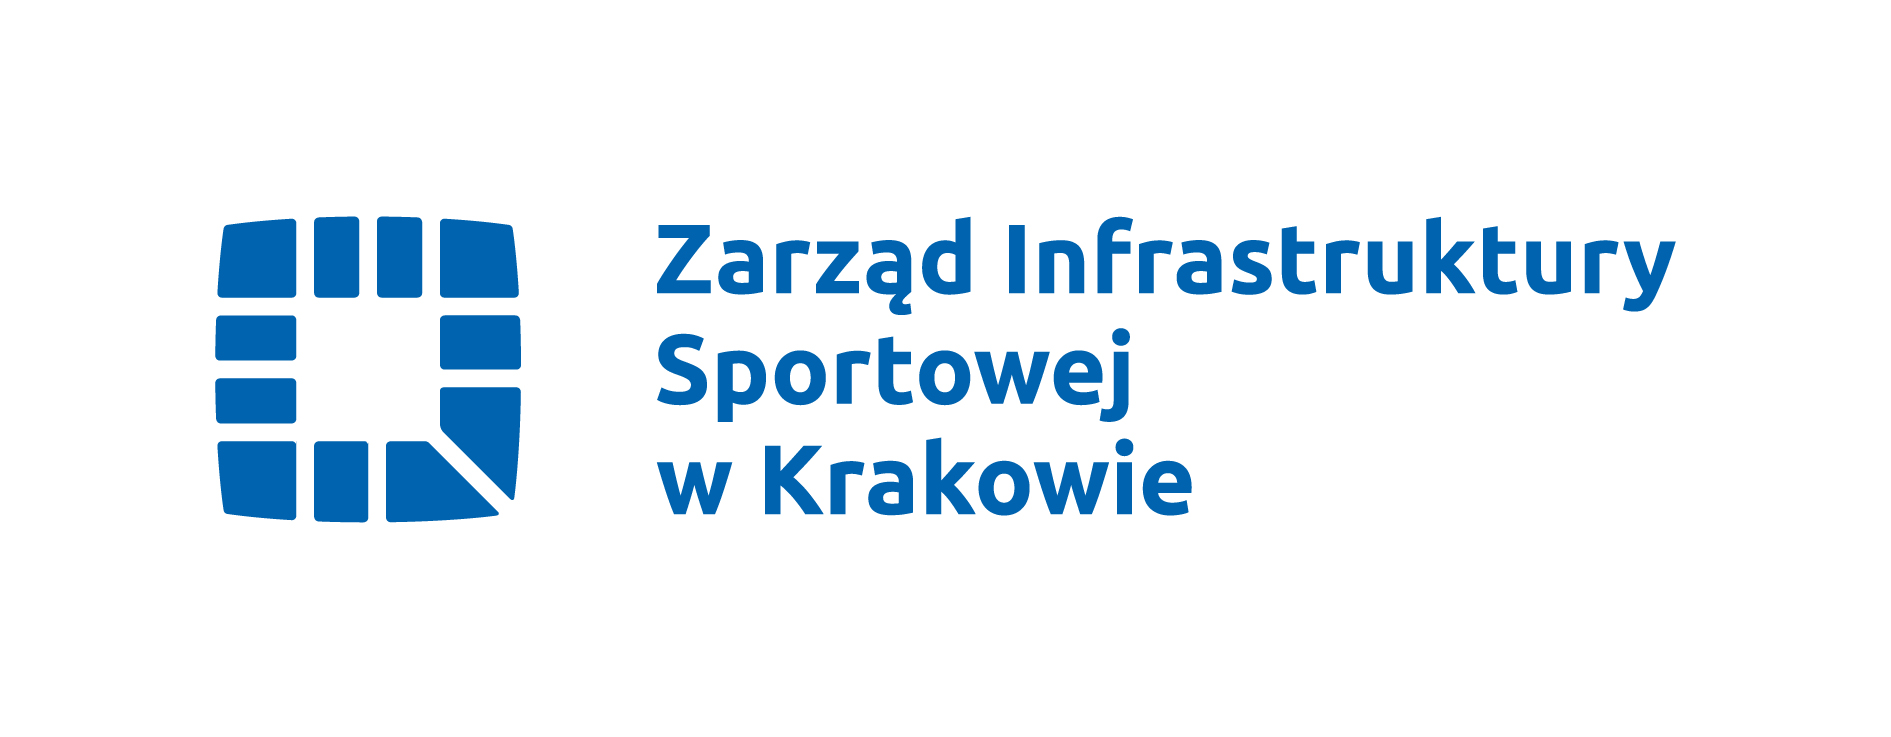 Zarząd Infrastruktury Sportowej w Krakowie